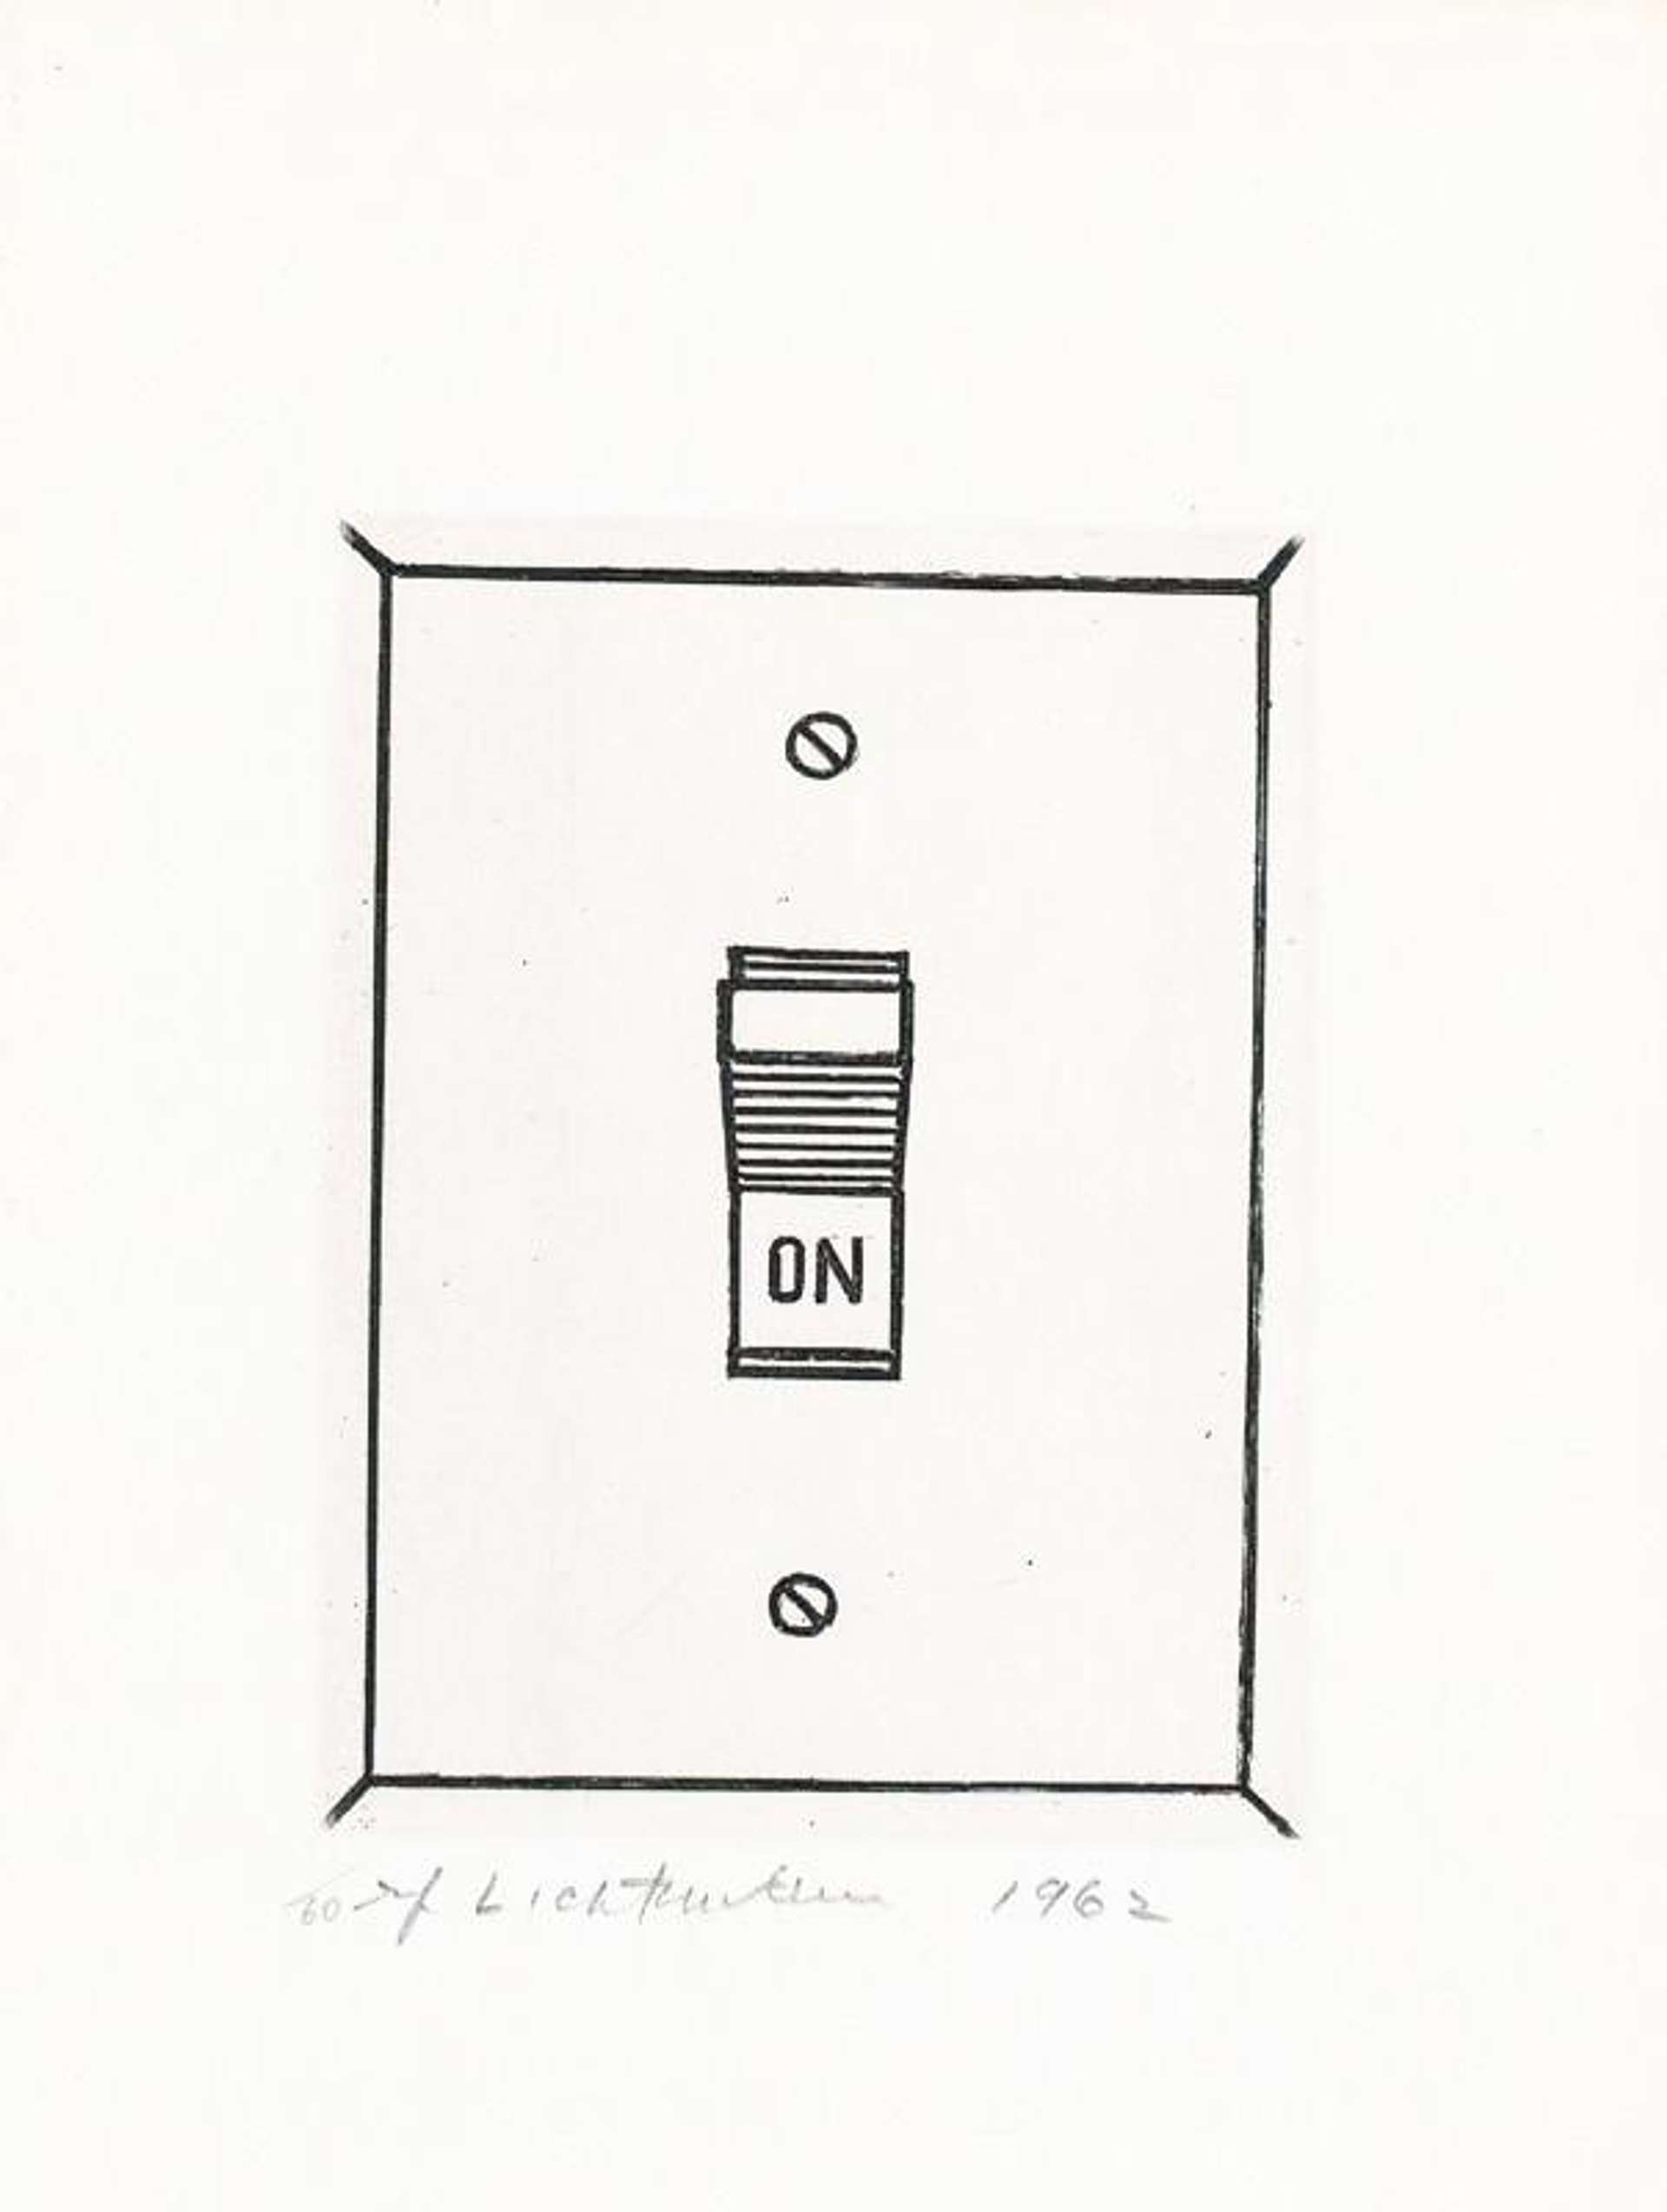 Roy Lichtenstein: On - Signed Print